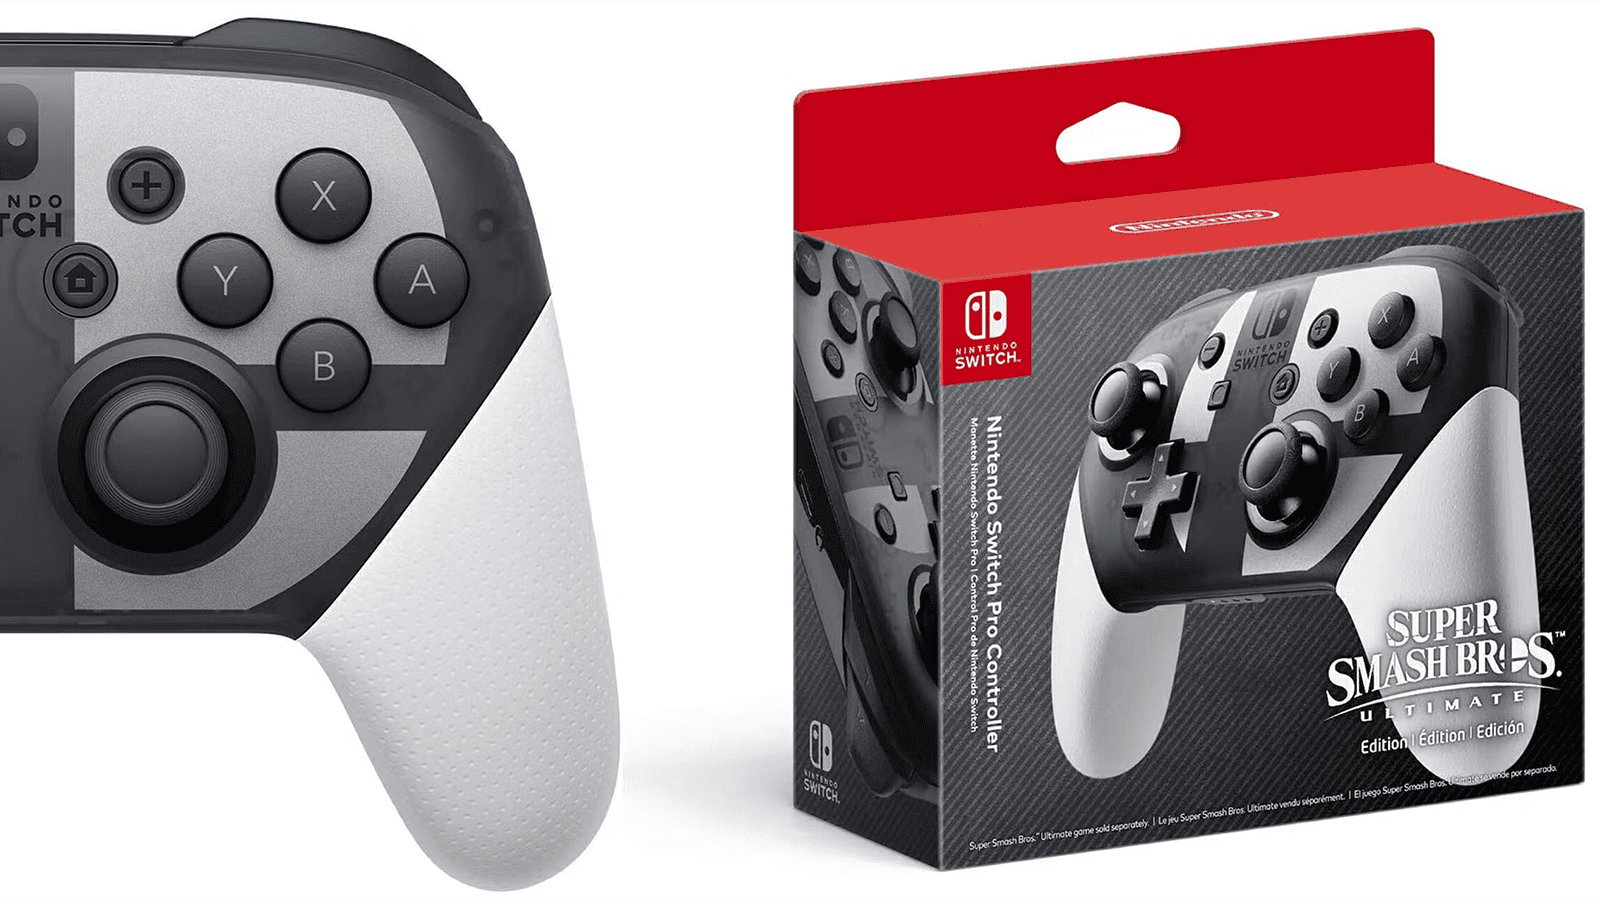 Nintendo Switch Pro Super Smash Bros Ultimate Remote Control är på en galen rea!